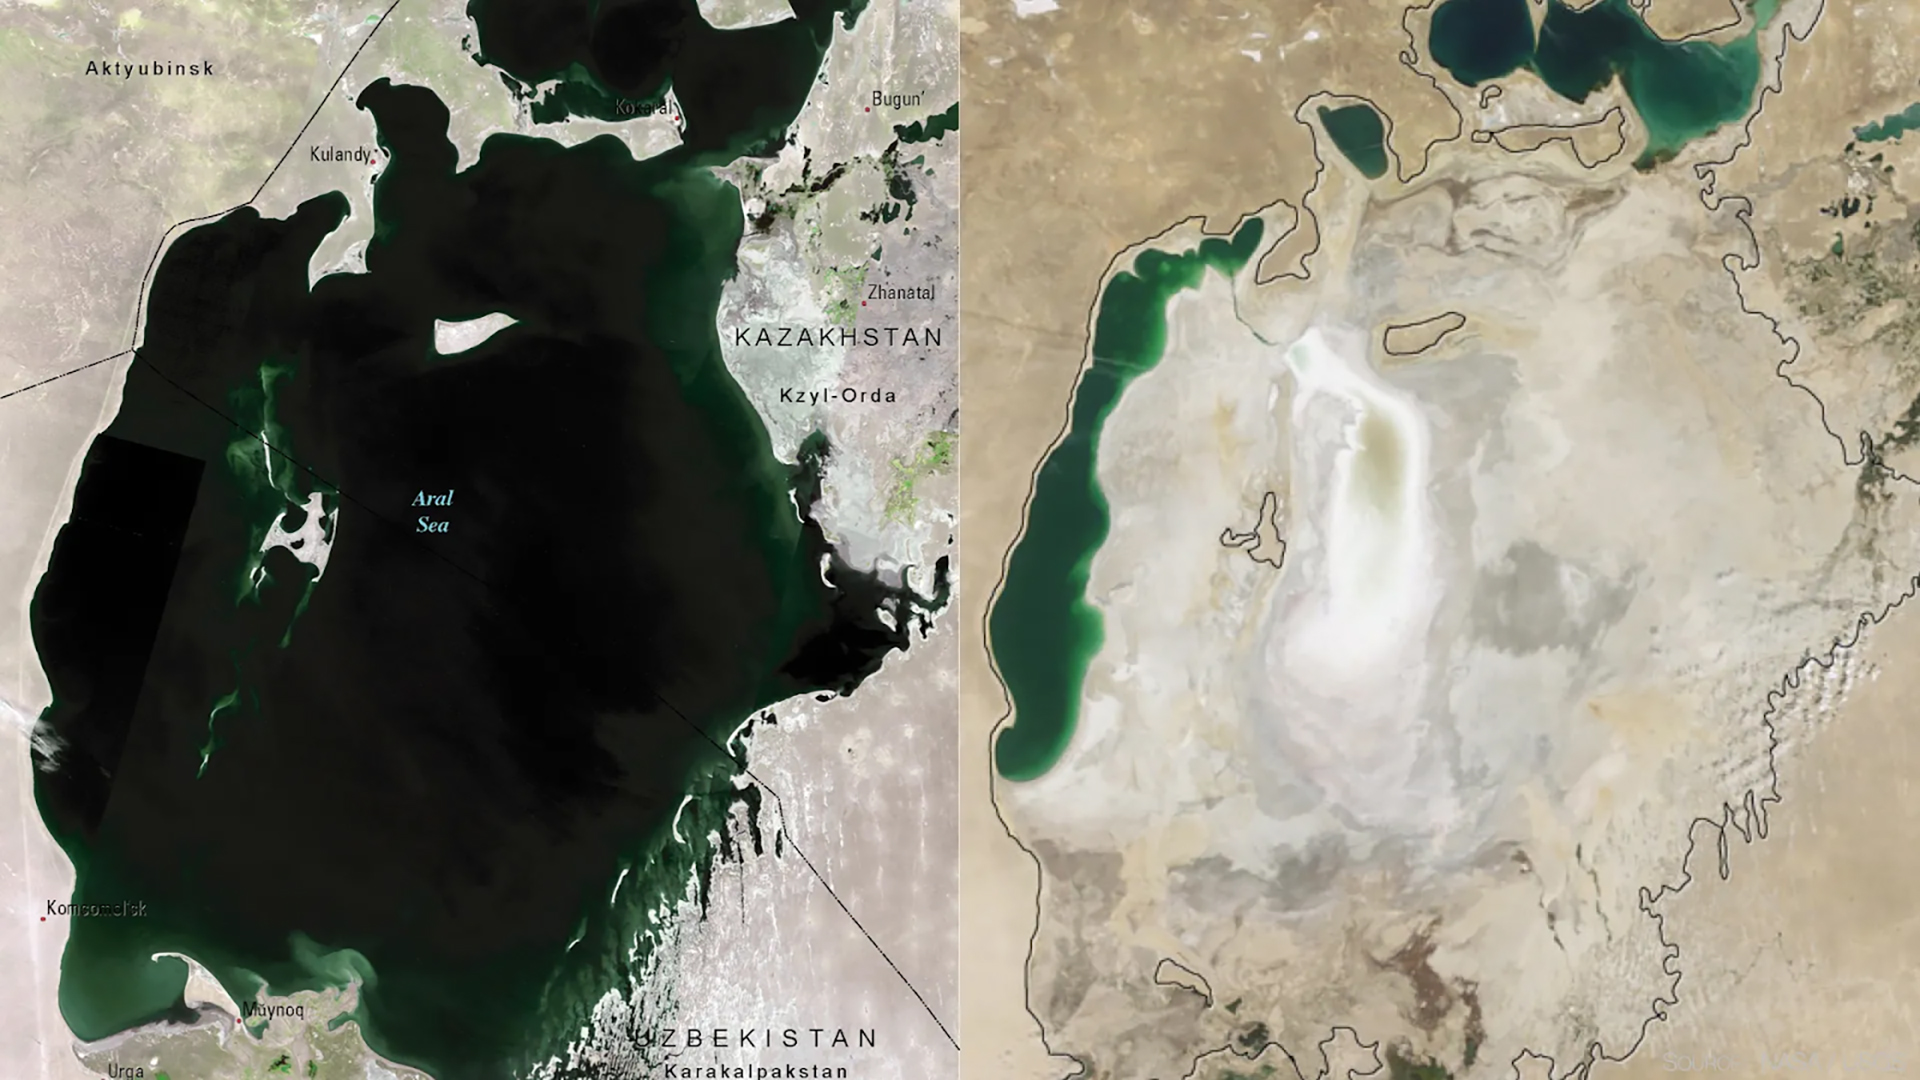 Satellite view comparison